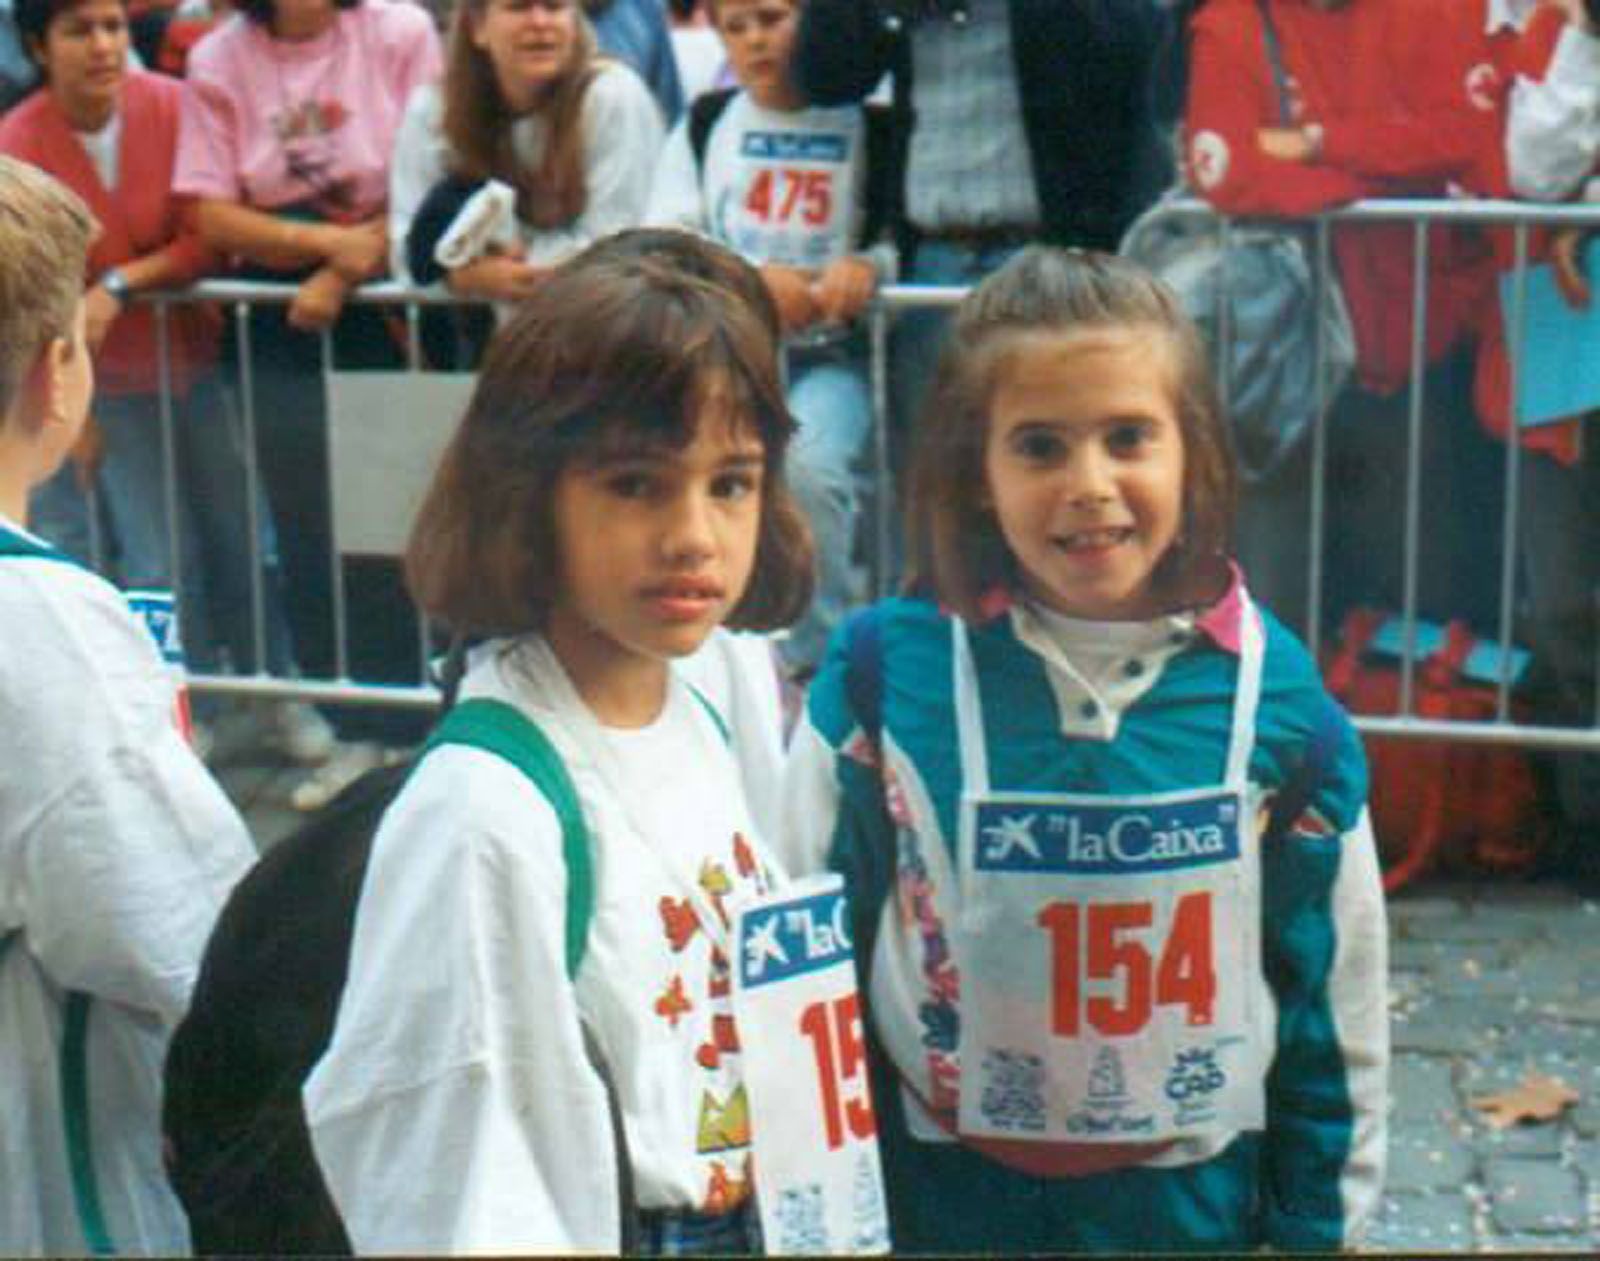 Tere Arechavala i Marta Castro, participants de la Marxa l'any 1995 Foto: Cedida